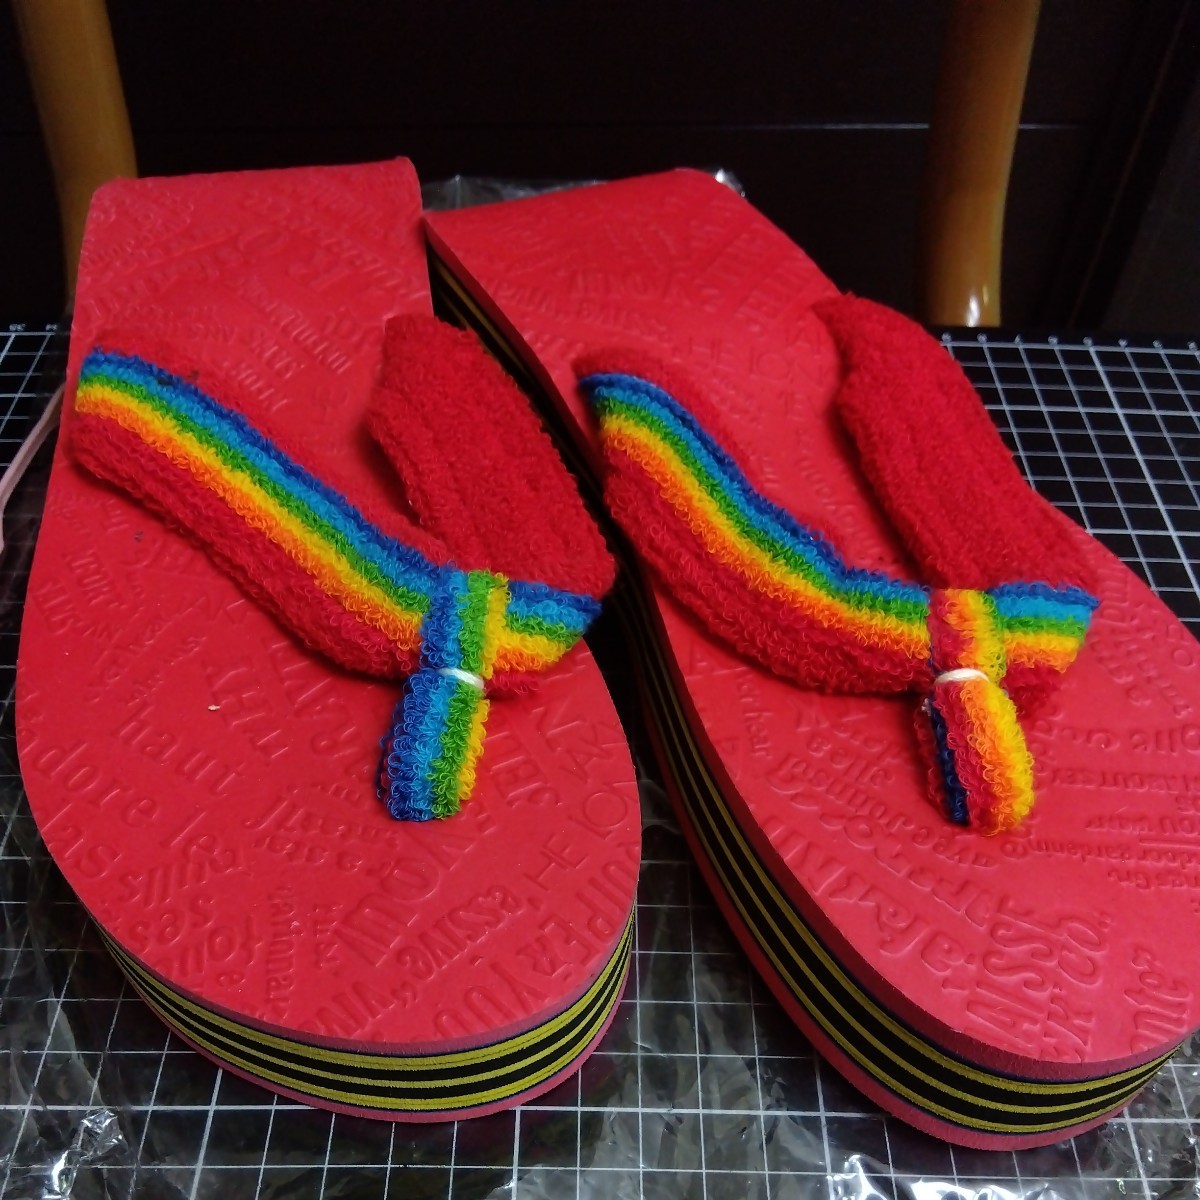  Showa Retro Be солнечный пляжные шлепанцы Rainbow красный 25. подлинная вещь 